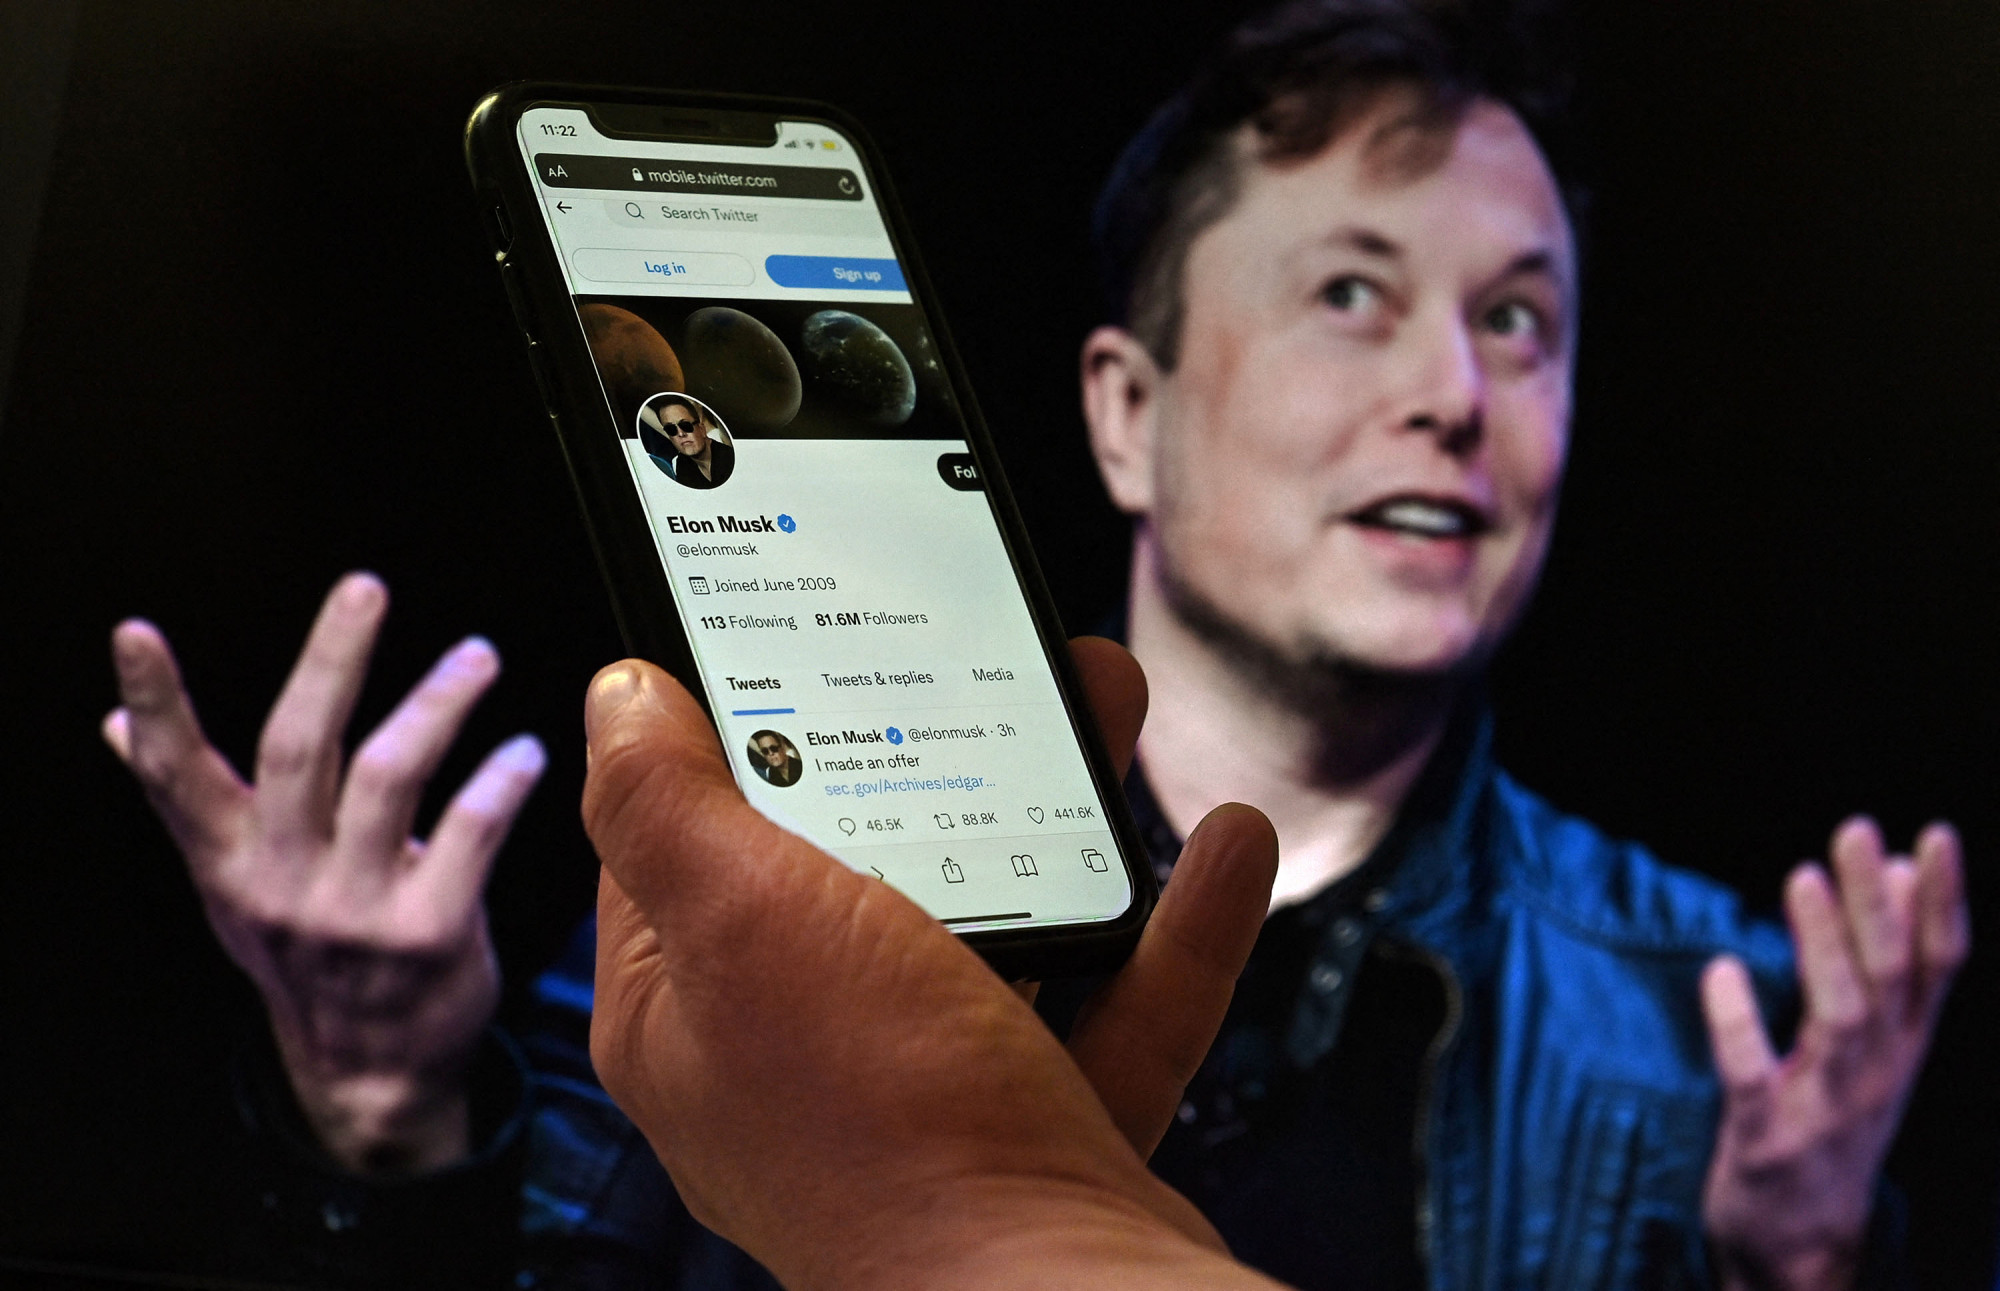 Eddig a Twitter követelte, hogy vegye meg Musk, most meg elutasította az ajánlatot – de az is lehet, hogy megint csak a Tesla tulaja kavar